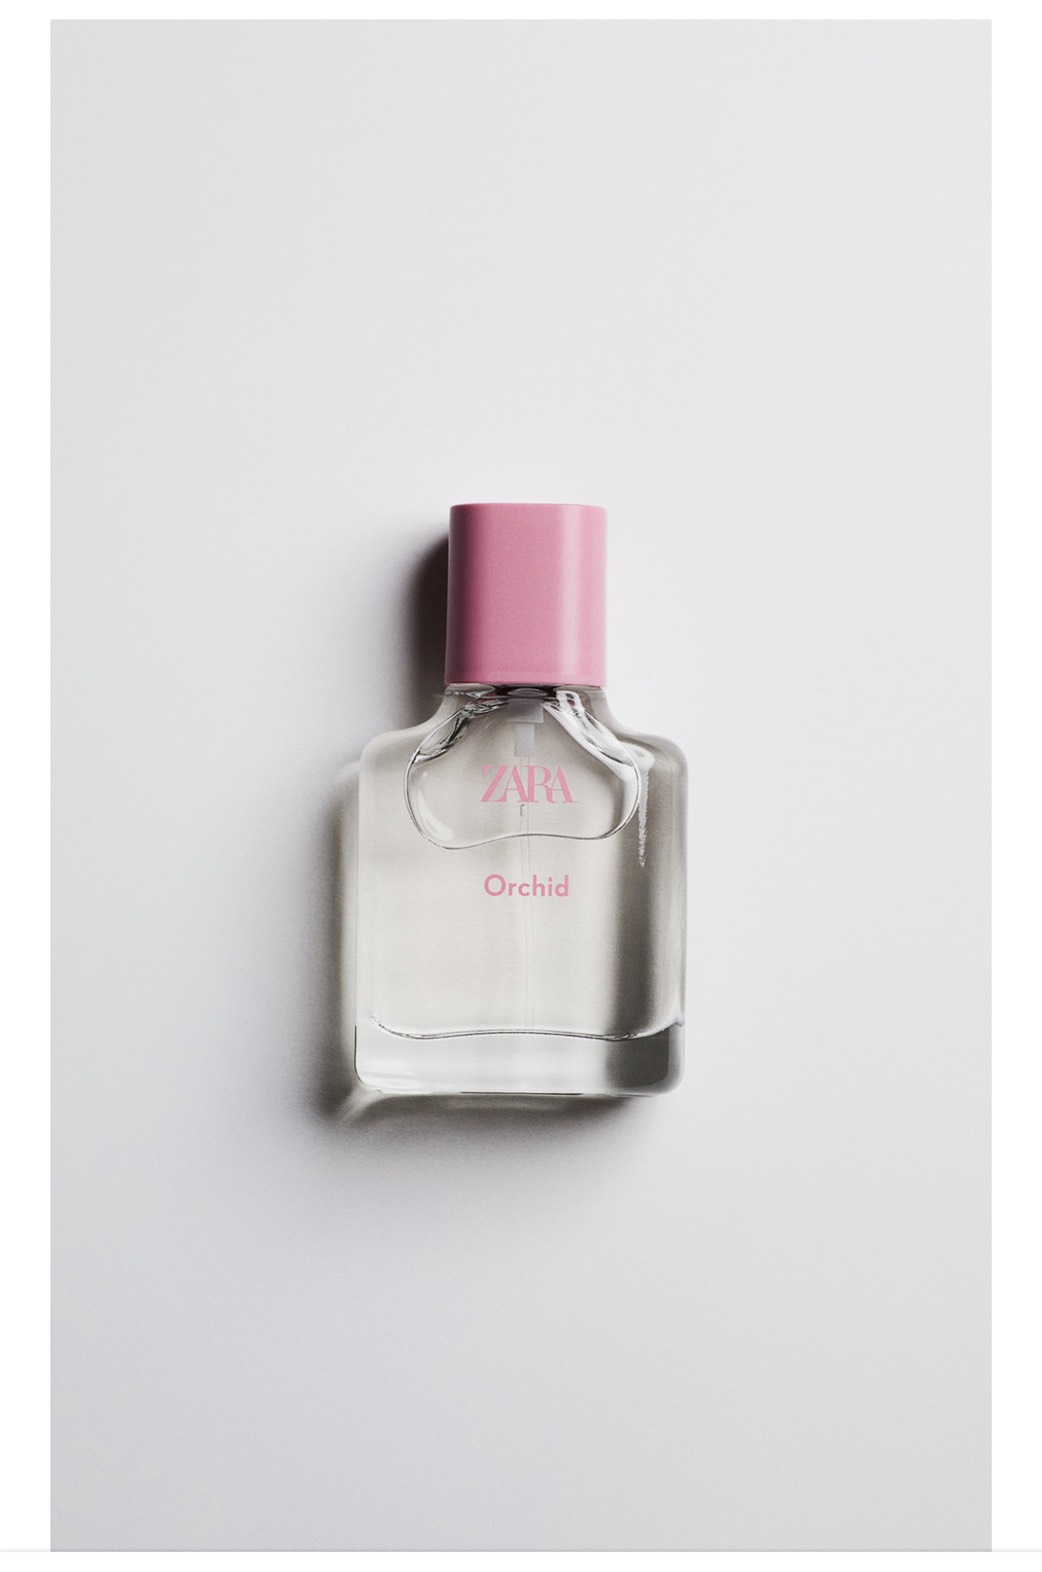 Review nước hoa Zara nữ - Mùi nào thơm nhất